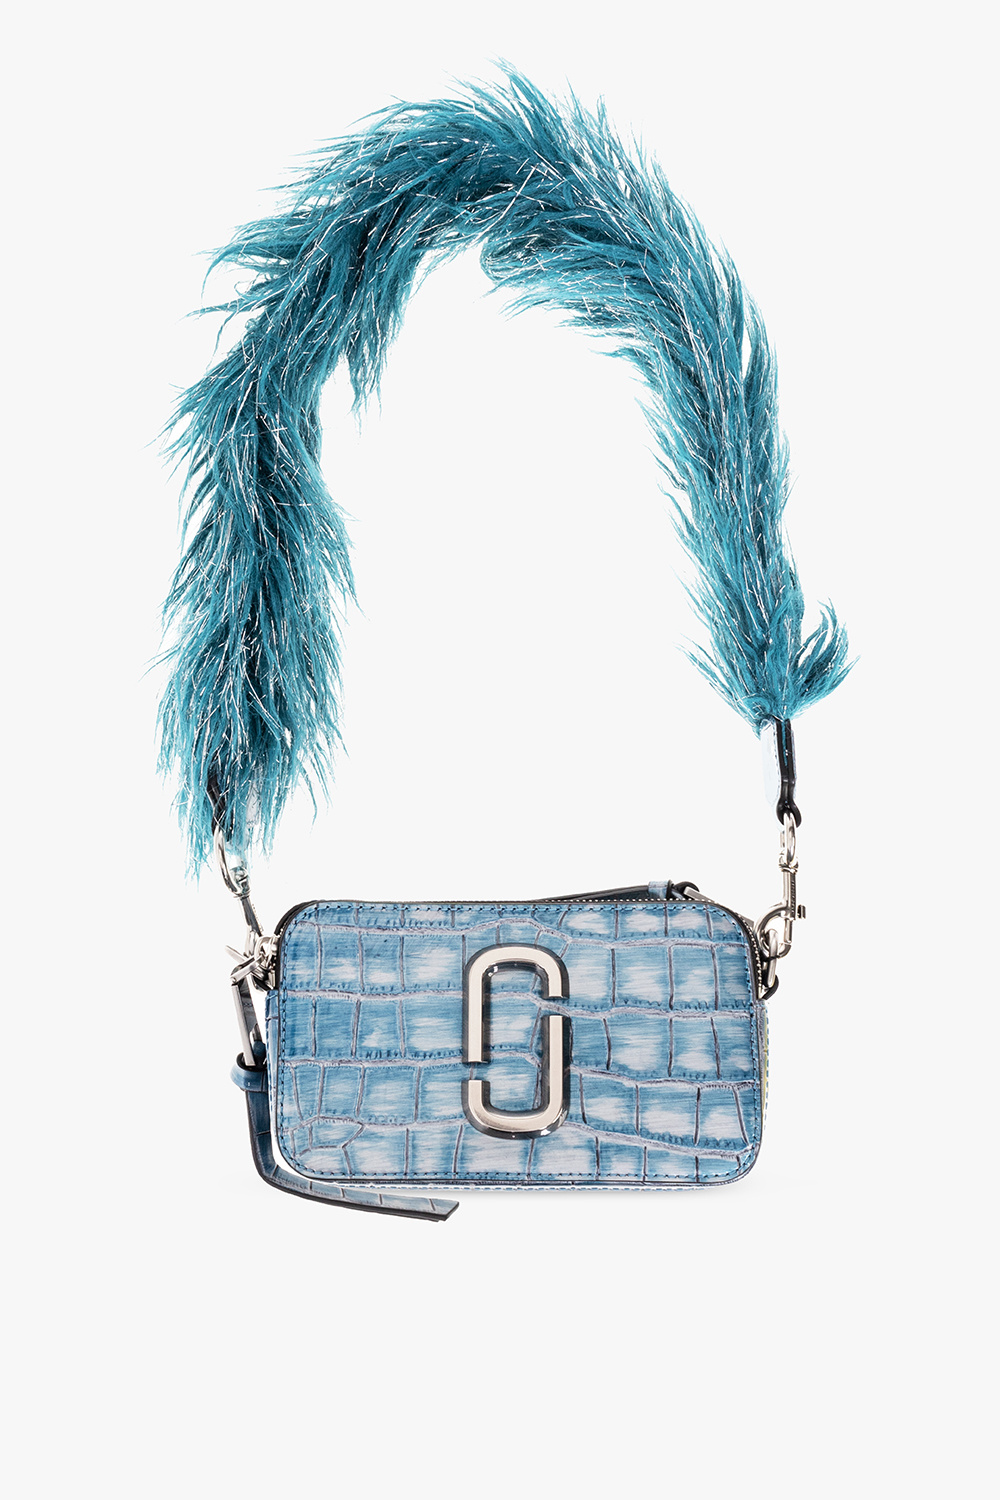 Blue 'The Camera Bag' shoulder bag Marc Jacobs - Vitkac HK